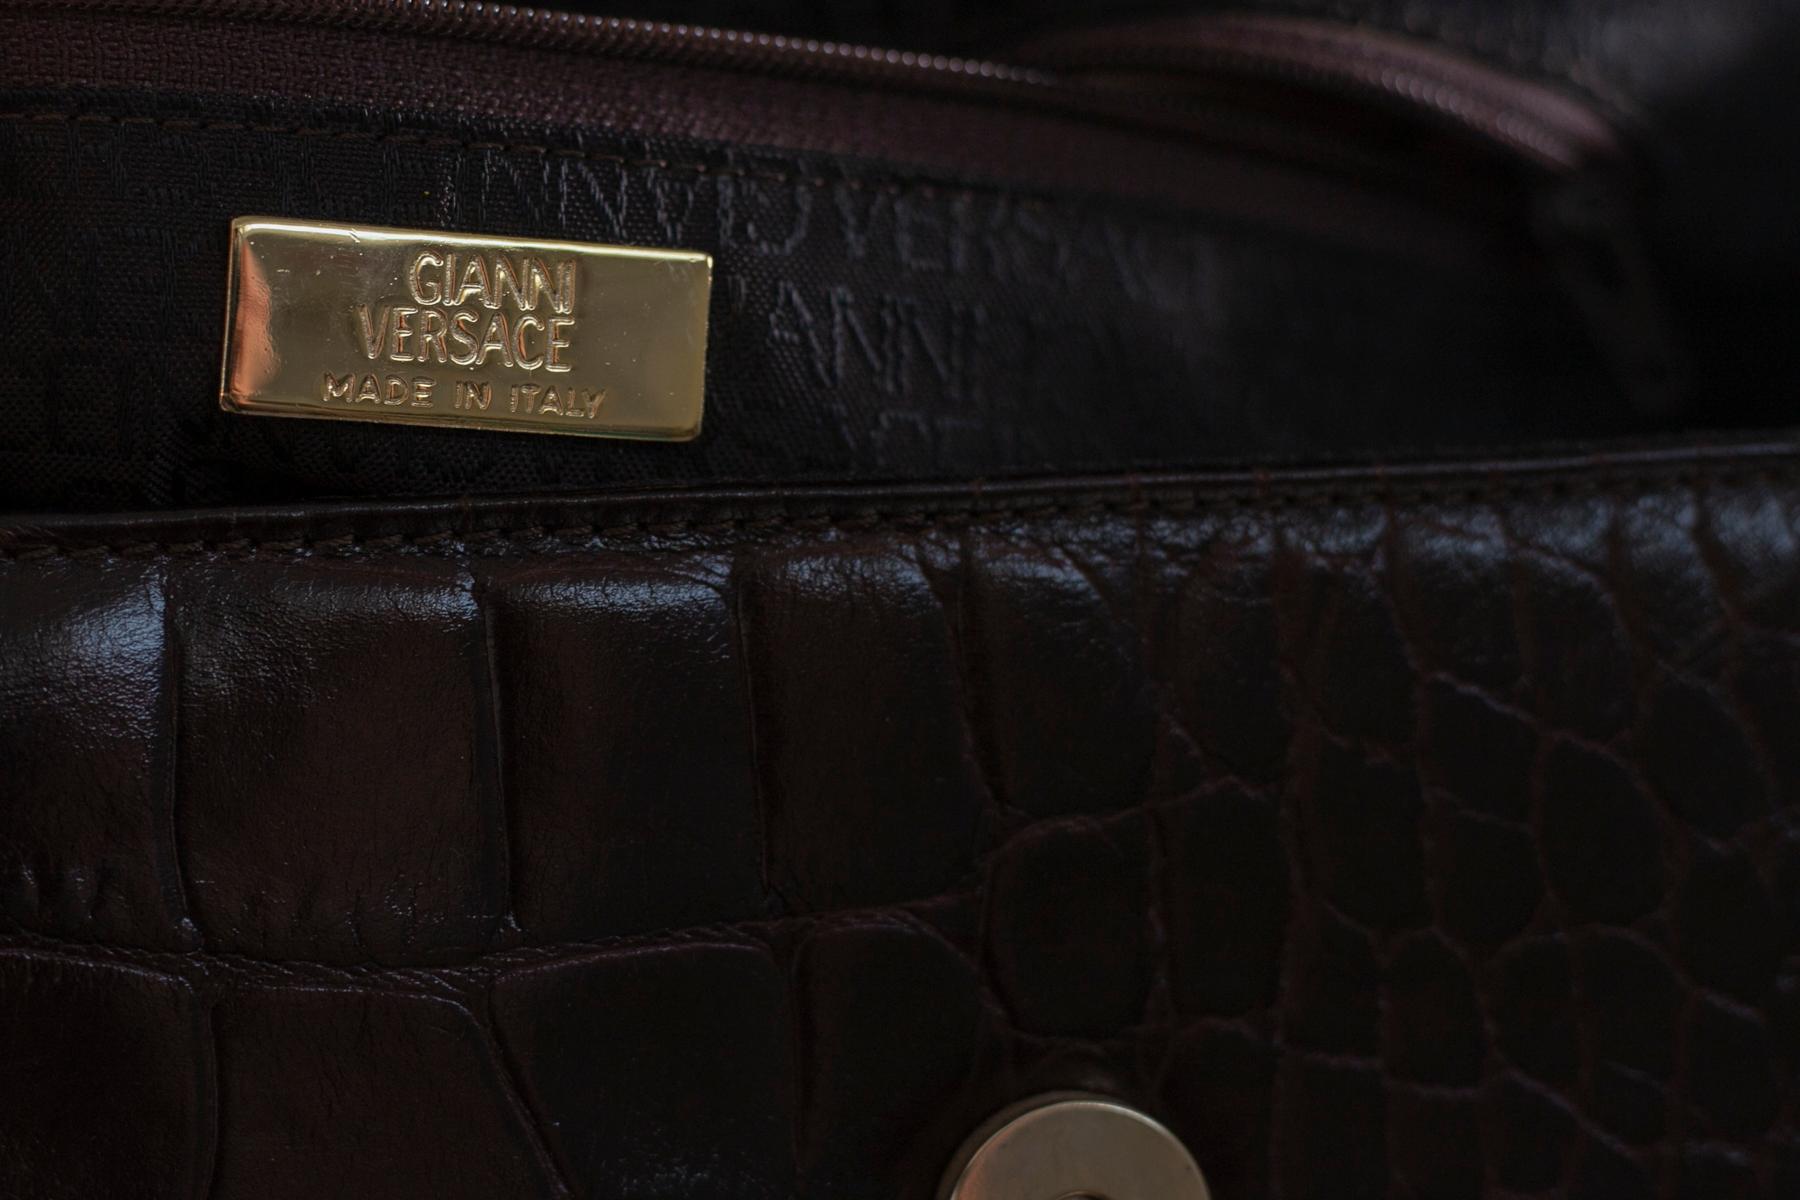 Étonnant et rare sac à poignée conçu par Gianni Versace dans les années 1990 en faux cuir imprimé crocodile bordeaux.
Le sac est de taille moyenne à petite et a la forme d'un sac bowling avec une double poignée entrelacée de chaînes dorées très